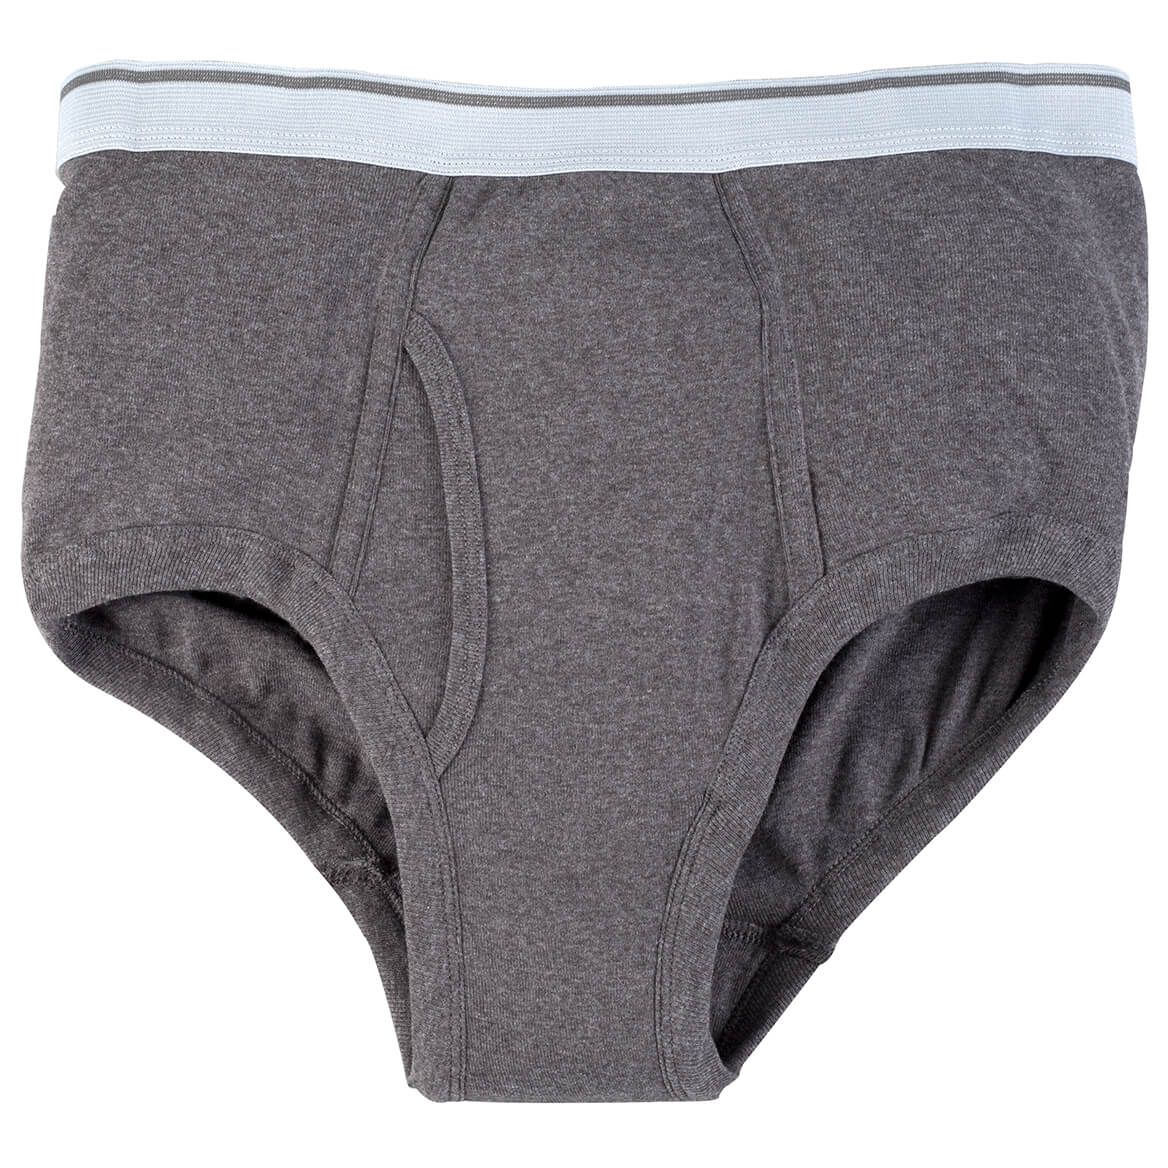 Men’s Incontinence Brief – Gray Underwear – 20 oz.